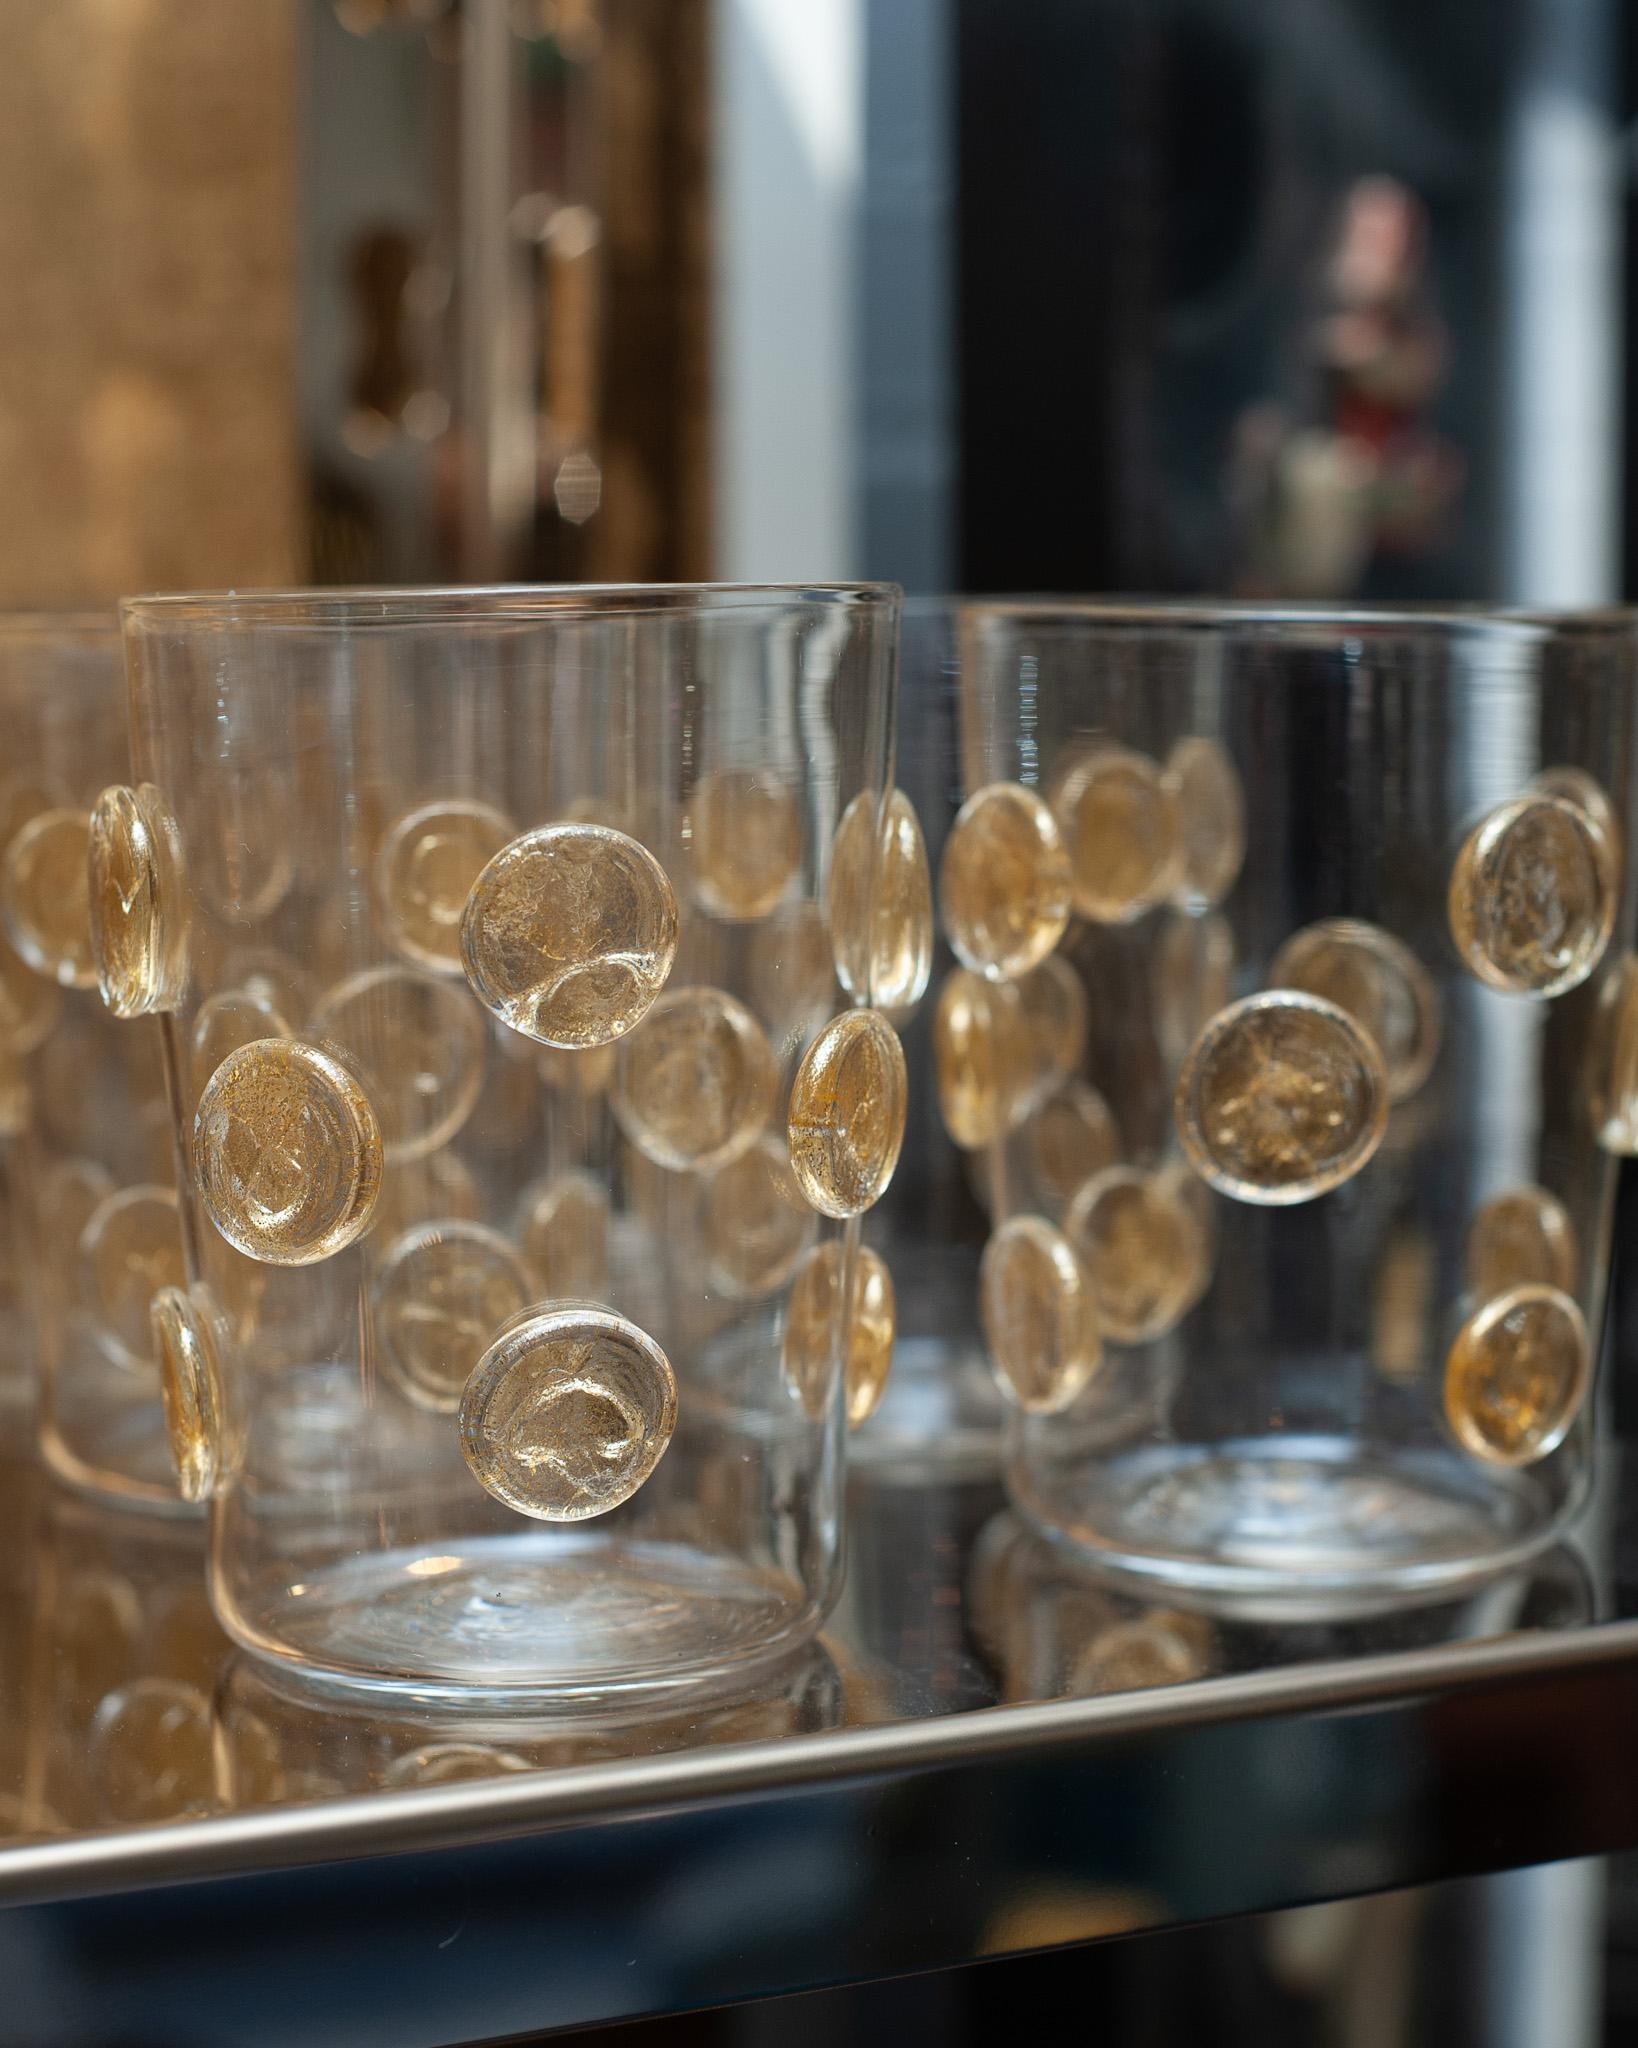 Ein zeitgenössisches Set von 12 Murano Bechern mit Blattgold von einem venezianischen Glasbläsermeister. Jedes Glas ist dünn und wunderschön mit Blattgoldtupfen verziert. Sie werden in Murano hergestellt und sind wahre Schmuckstücke für den Tisch.